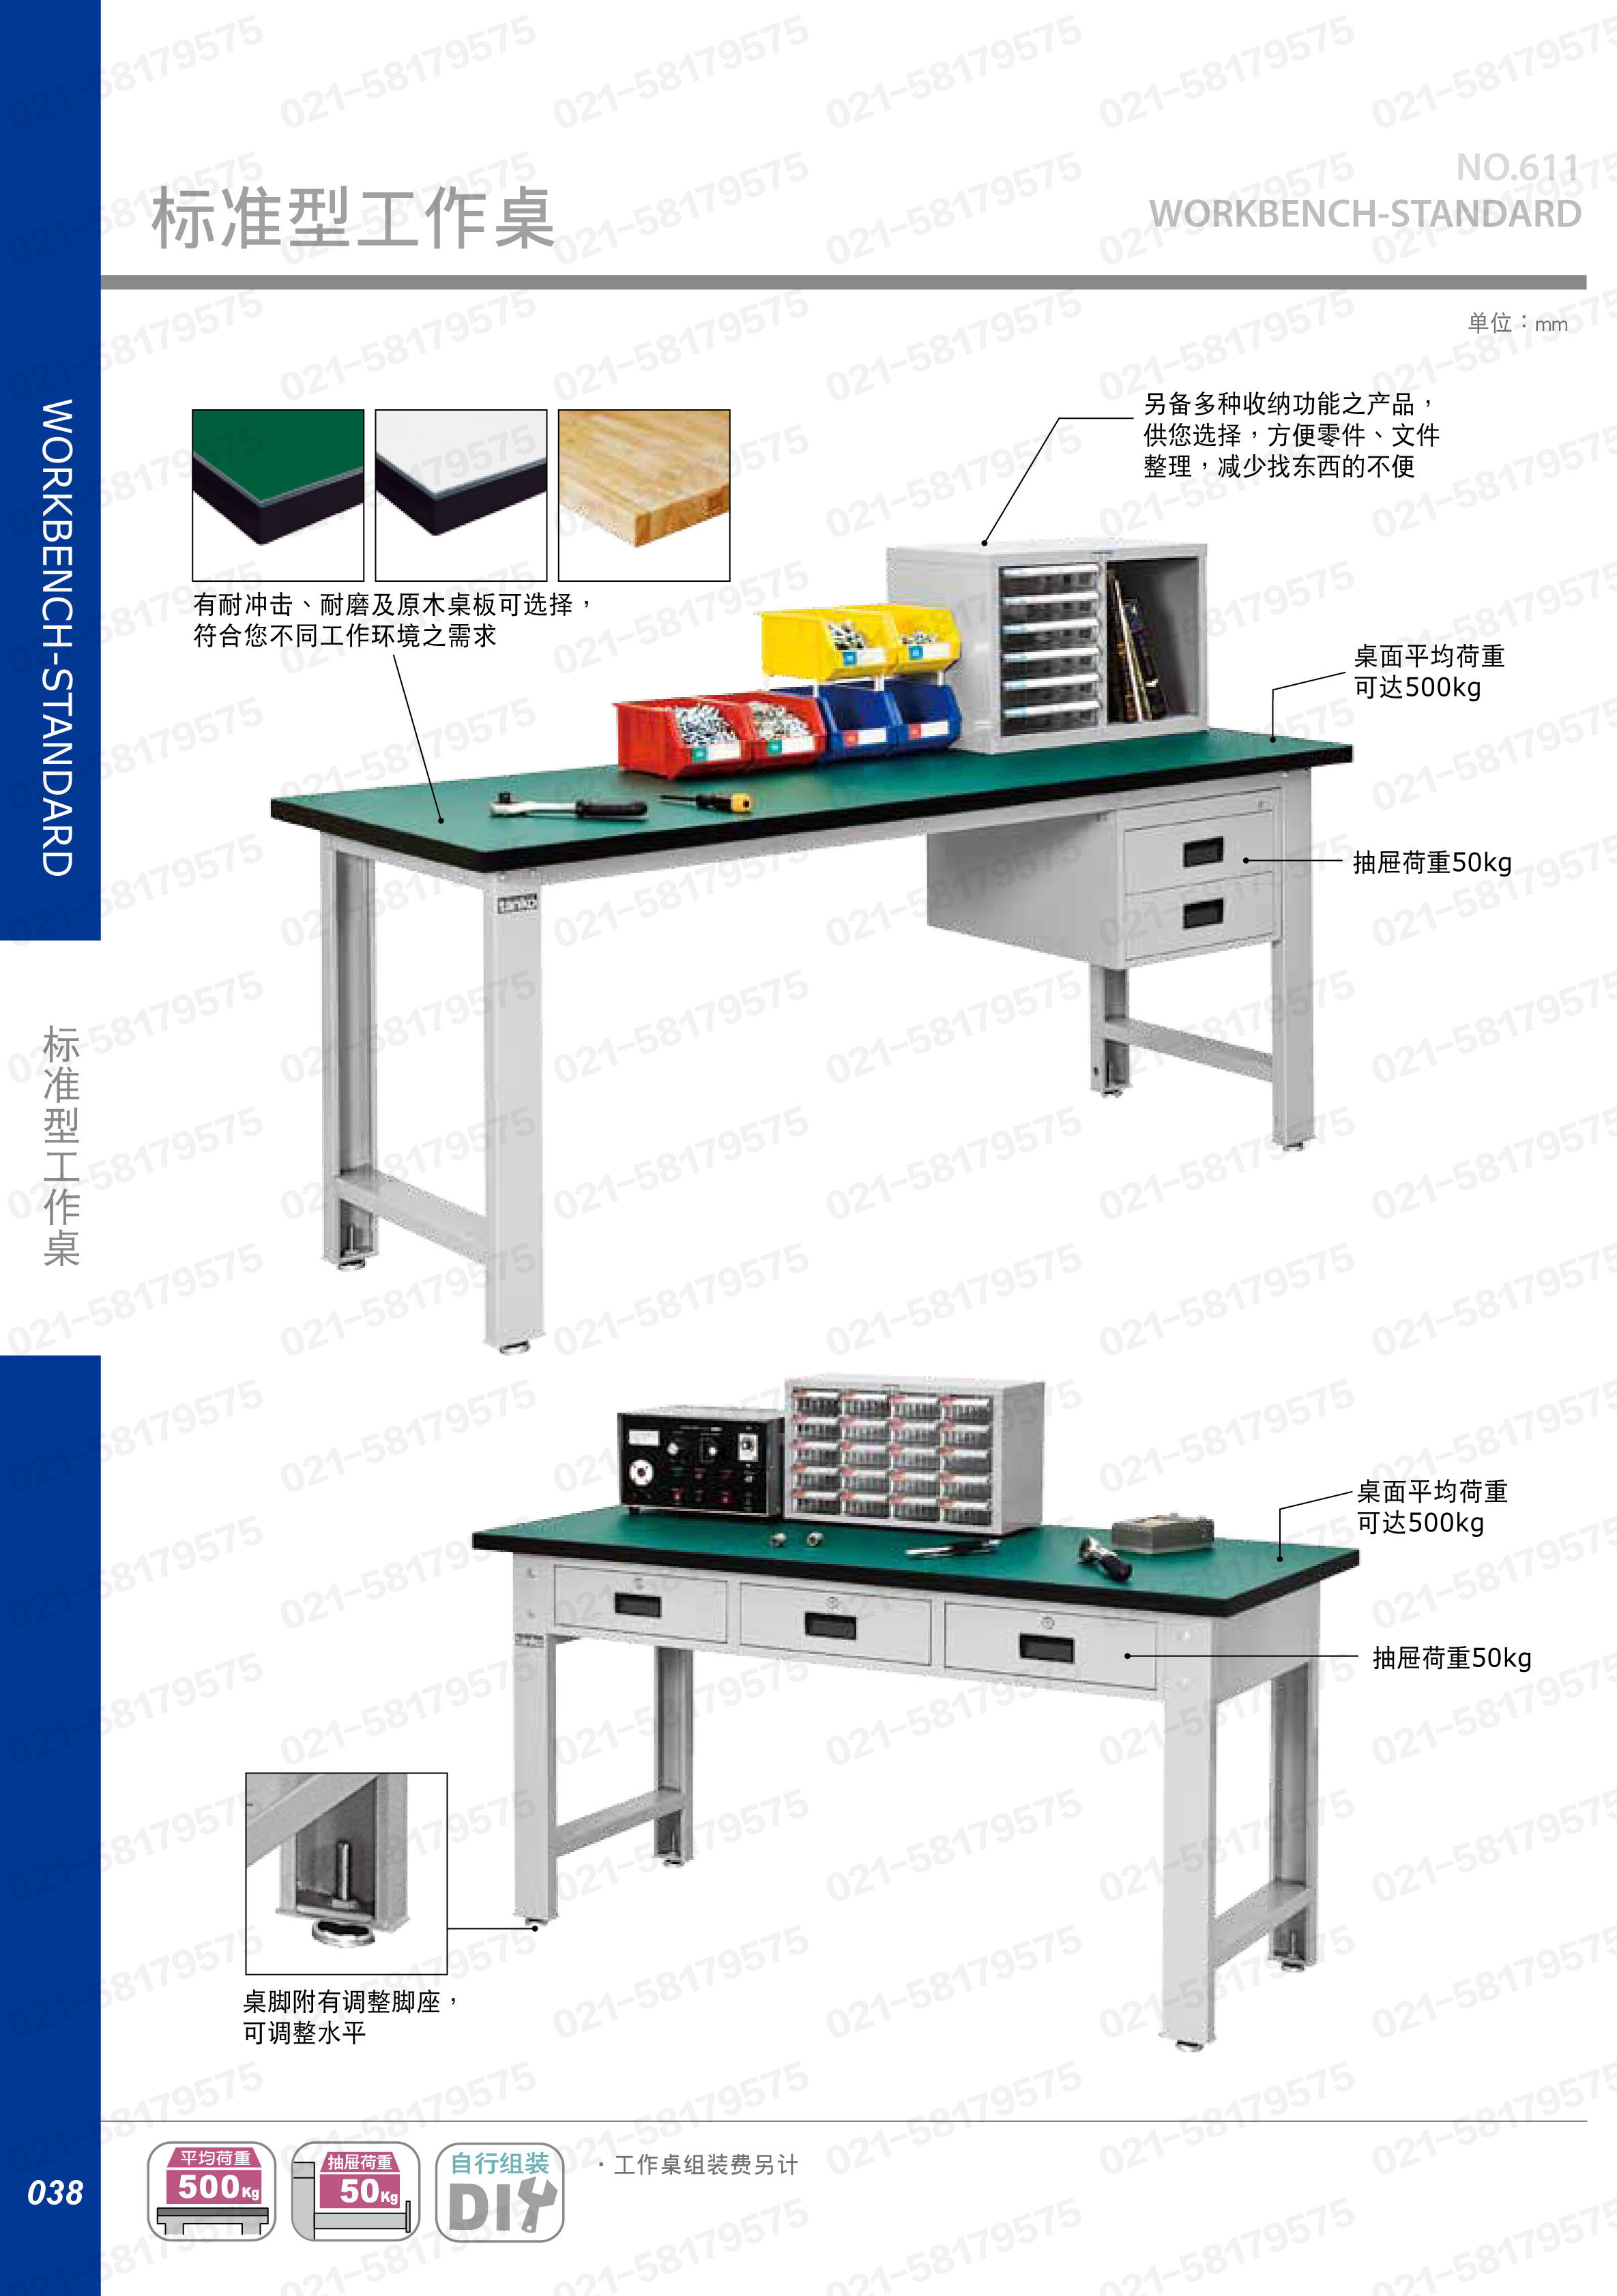 轻型工作桌1500×750×800mm 原木桌板 带三横抽,WBT-6203W,5D2945